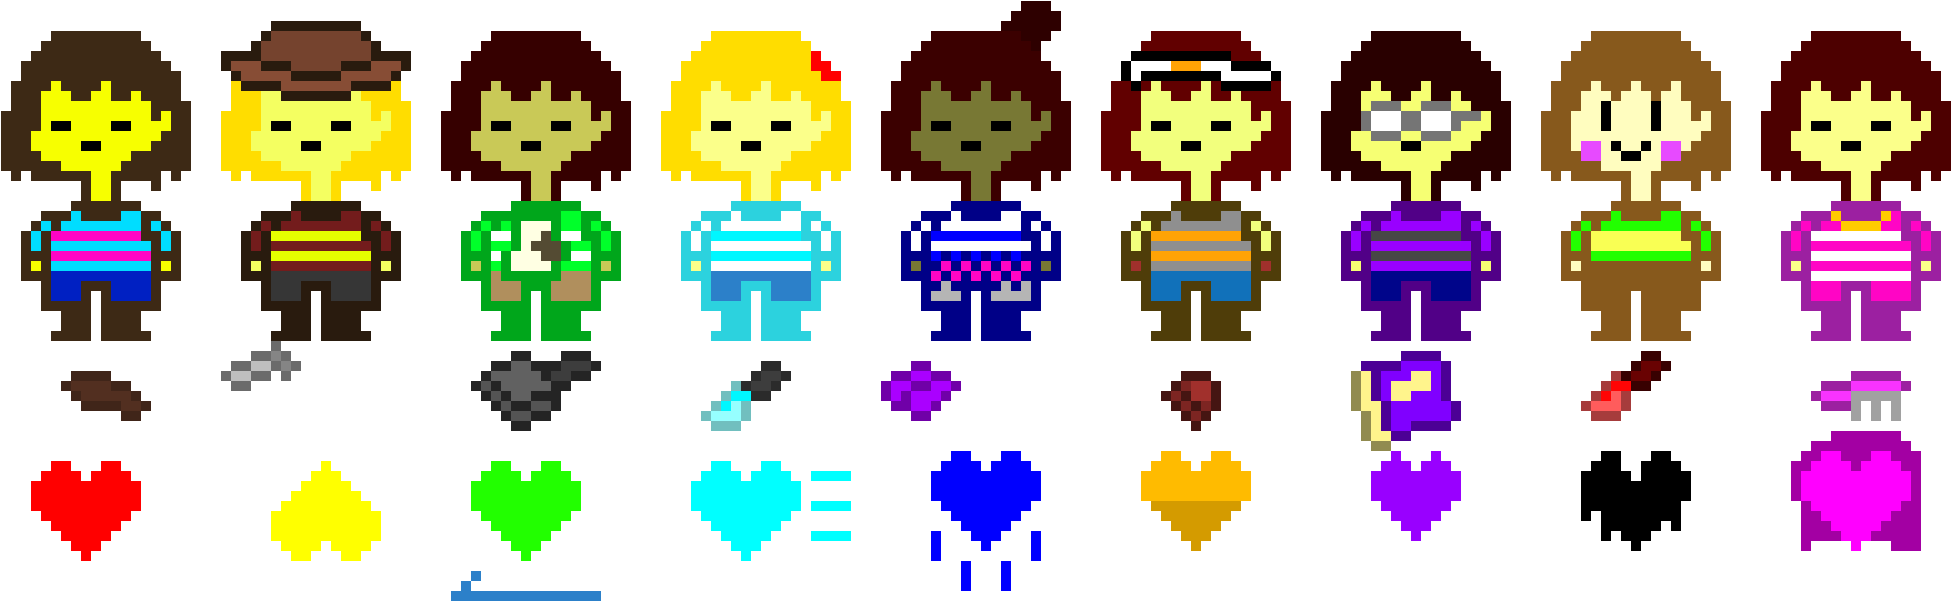 Pixelated Charactersand Souls